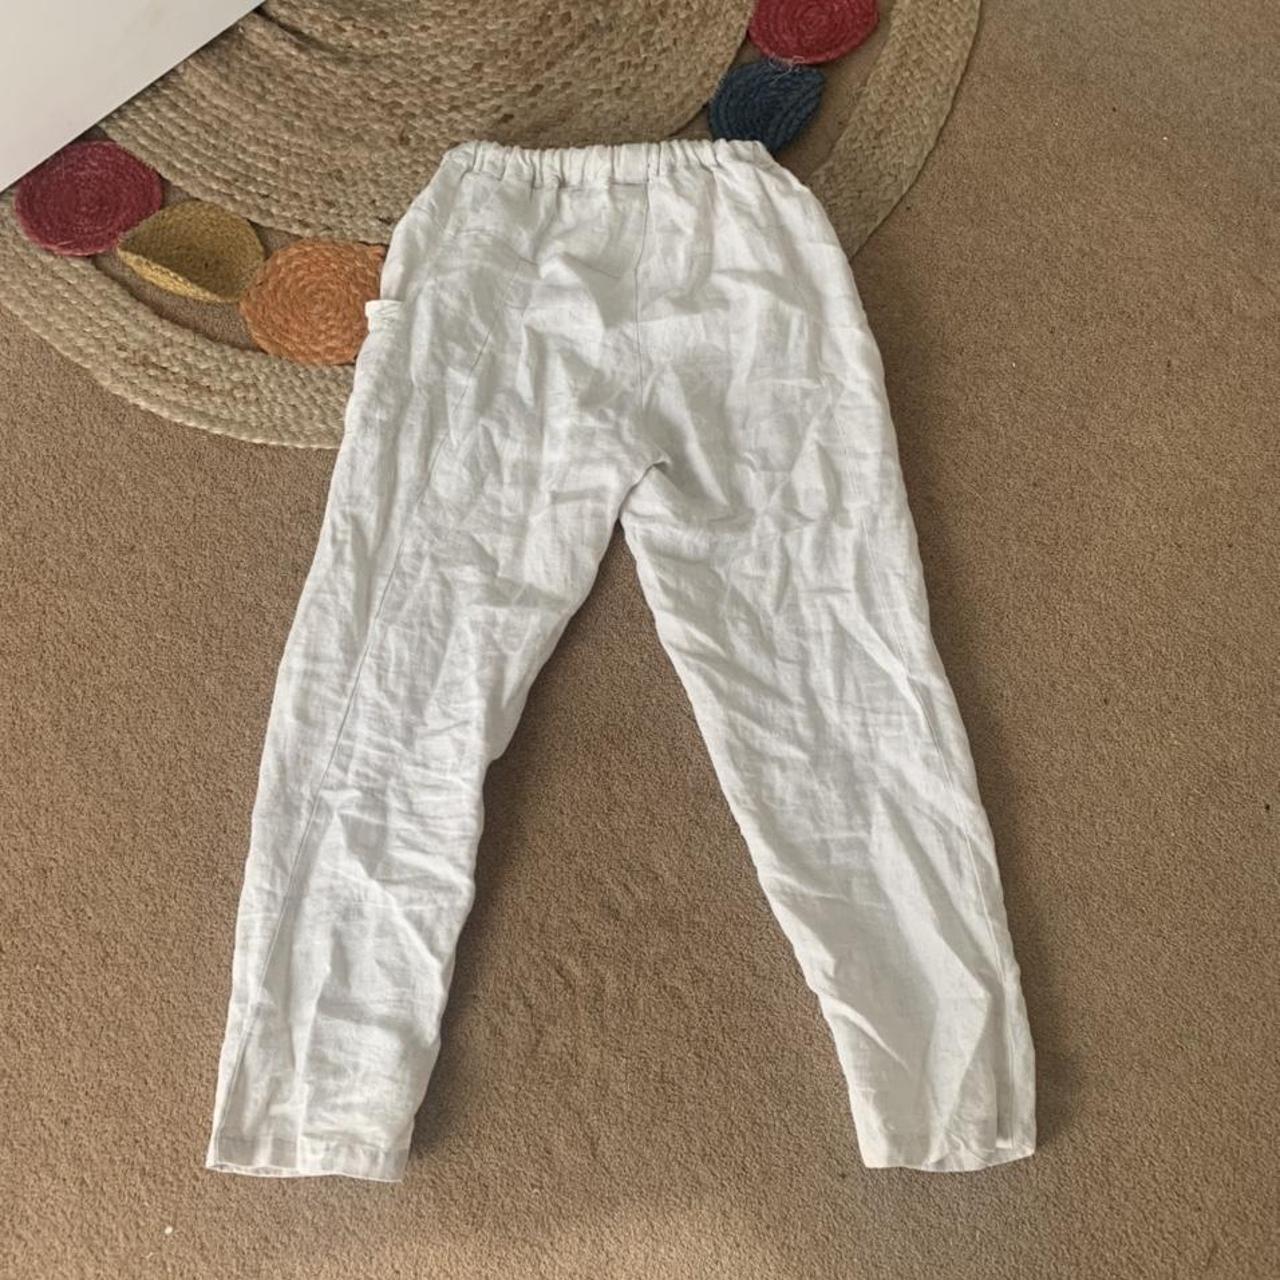 Linen cream pants 🏝 100% linen Brand: Little... - Depop